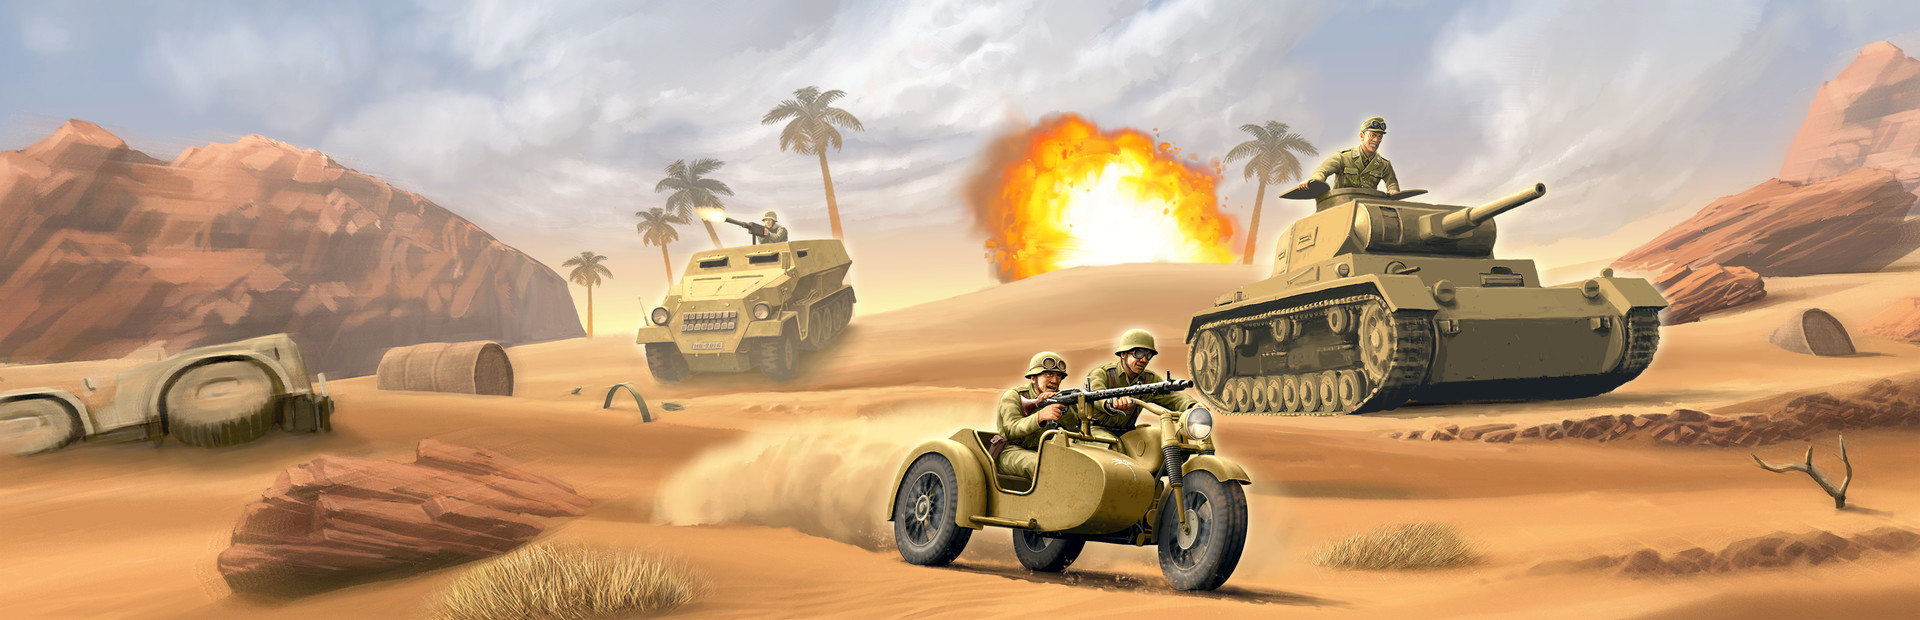 1943 Deadly Desert cover image